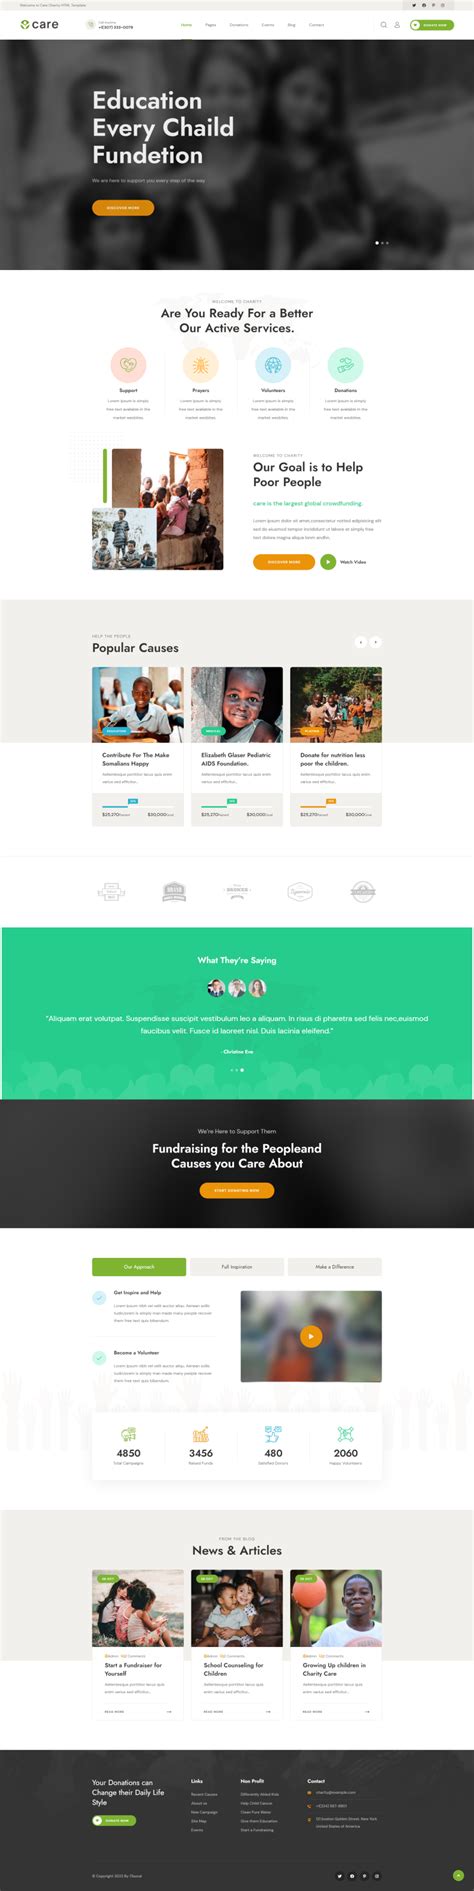 慈善组织网站模板设计，简约的爱心公益网页代码_墨鱼部落格